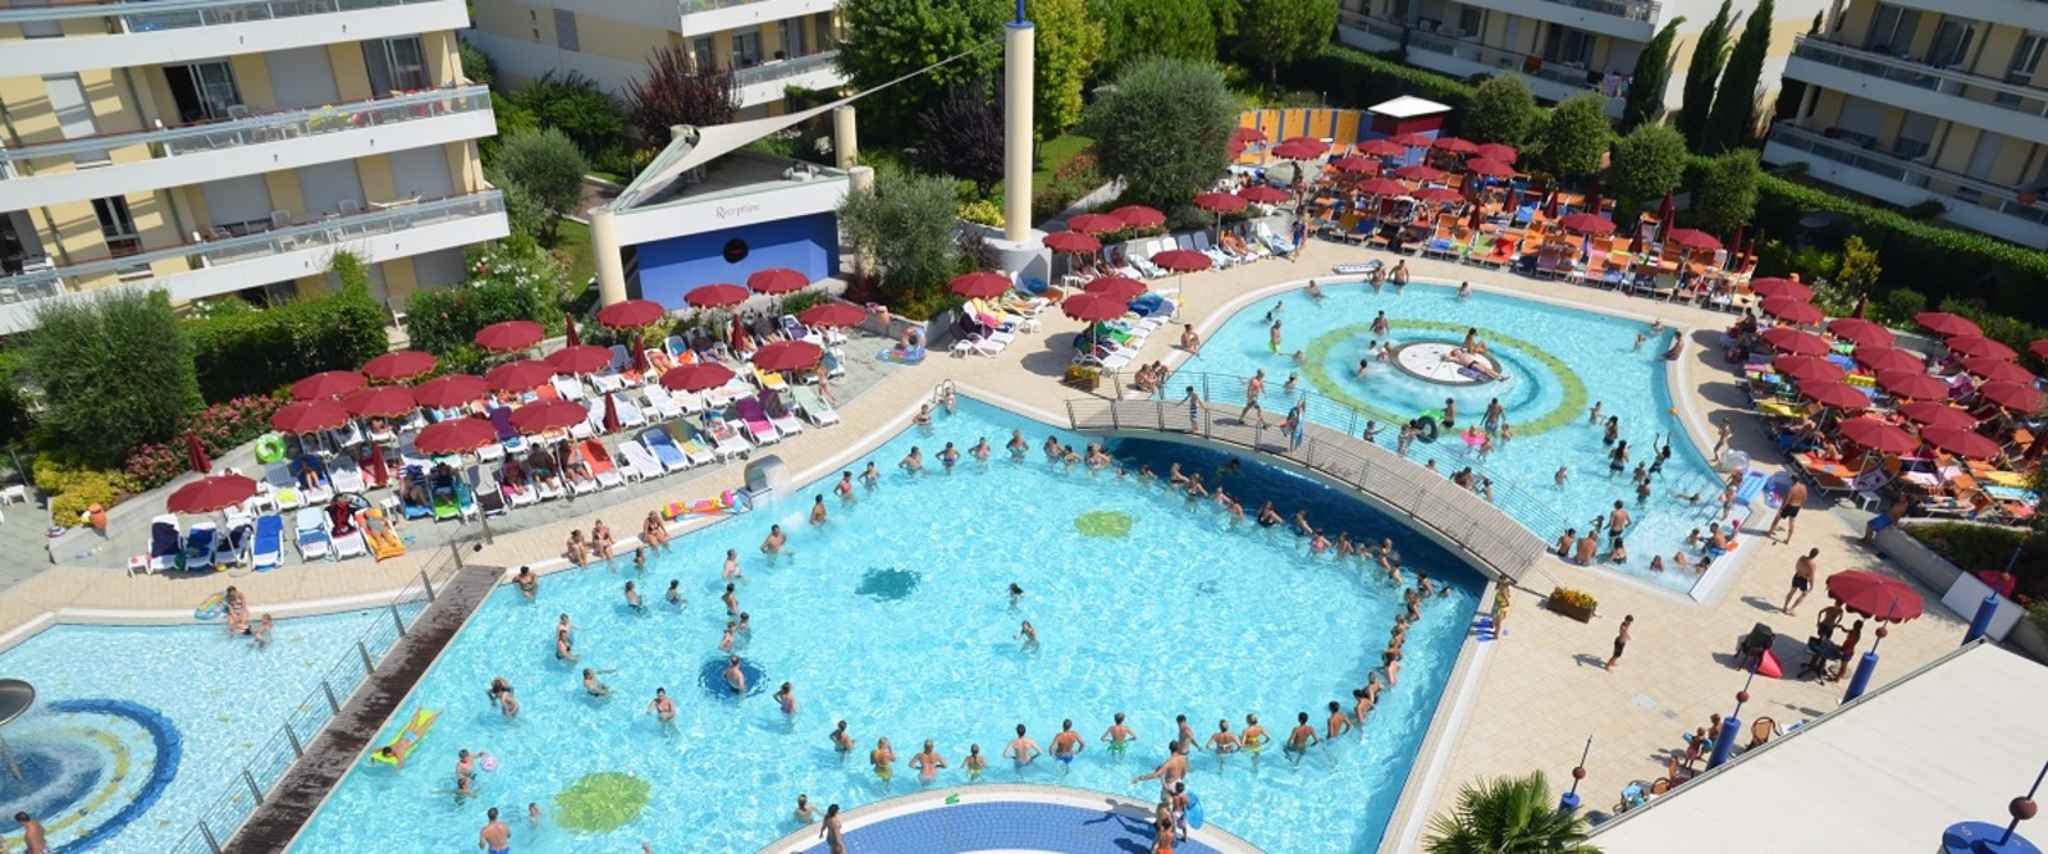 Ferienwohnung mit Wasserrutschen und Pools  in Europa